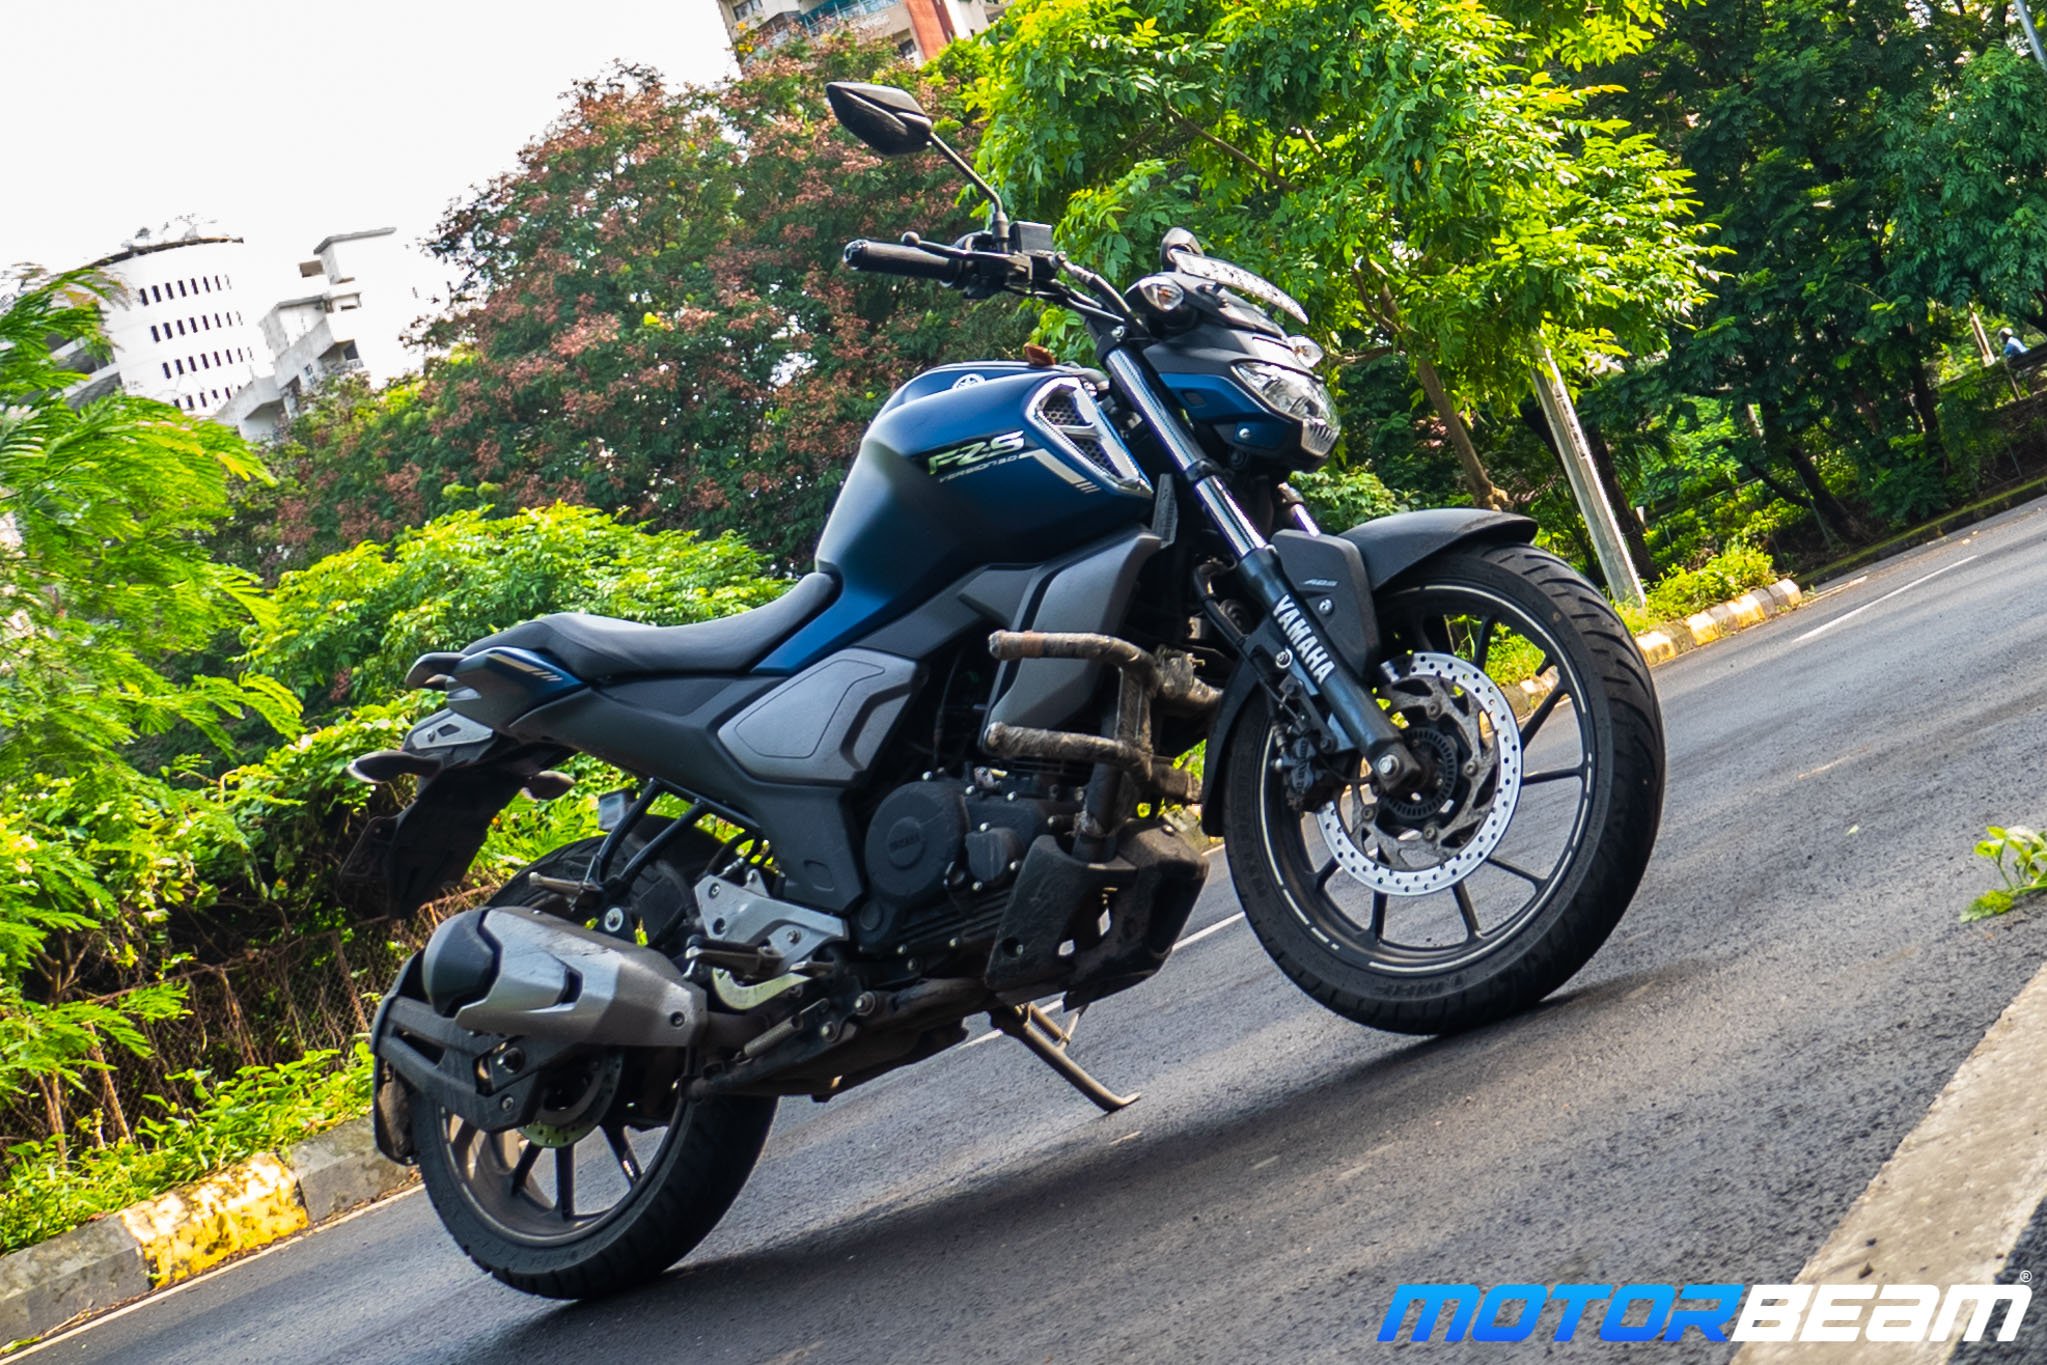 Yamaha Fz 250 Price In Sri Lanka 2019